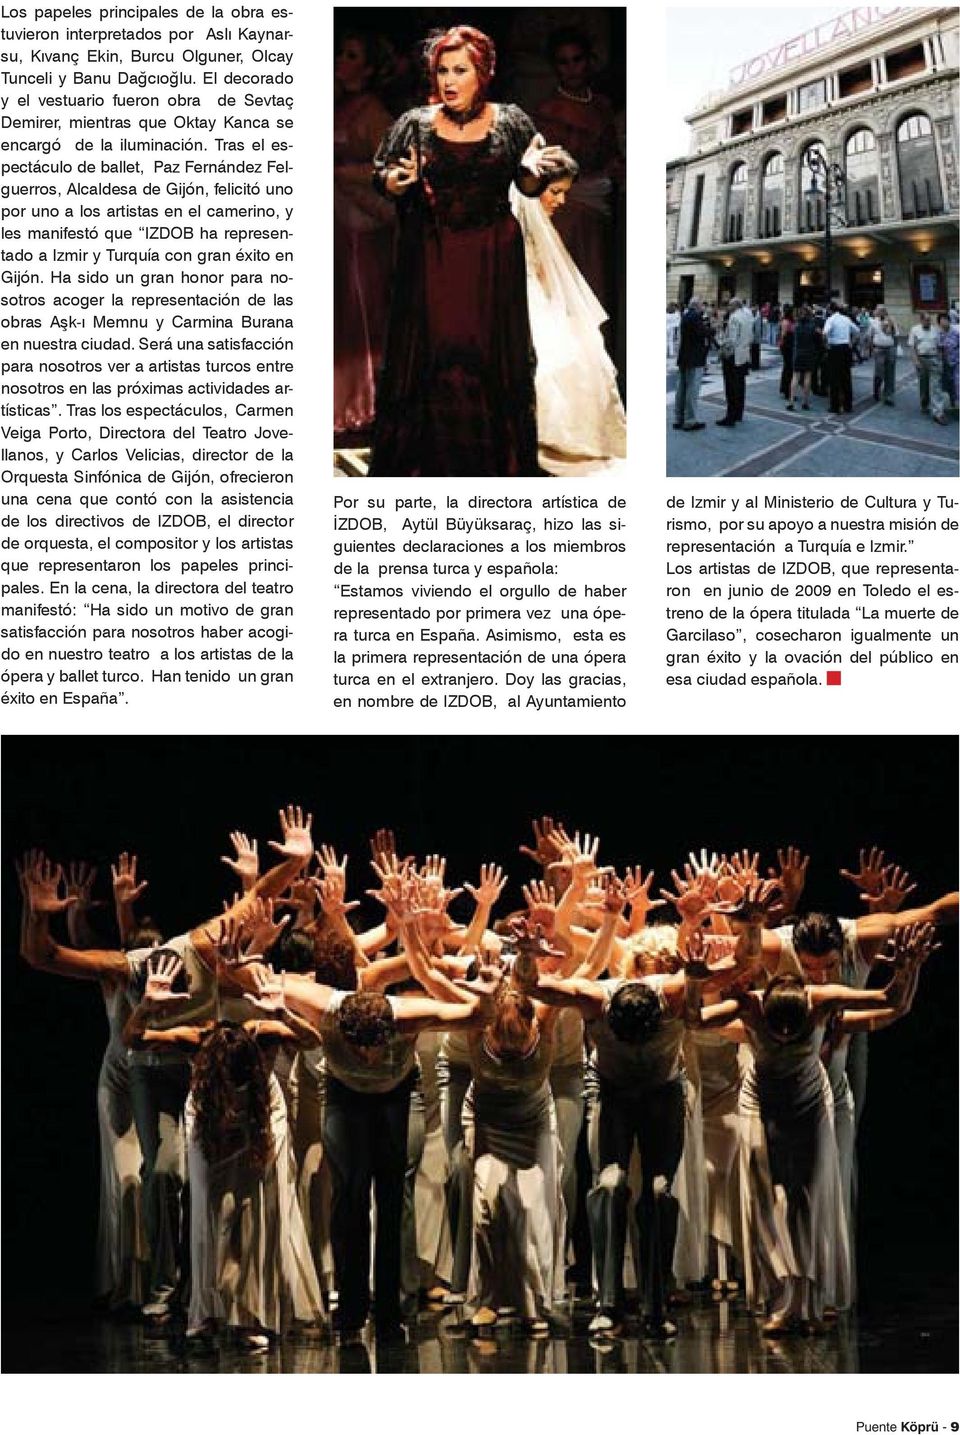 Tras el espectáculo de ballet, Paz Fernández Felguerros, Alcaldesa de Gijón, felicitó uno por uno a los artistas en el camerino, y les manifestó que IZDOB ha representado a Izmir y Turquía con gran